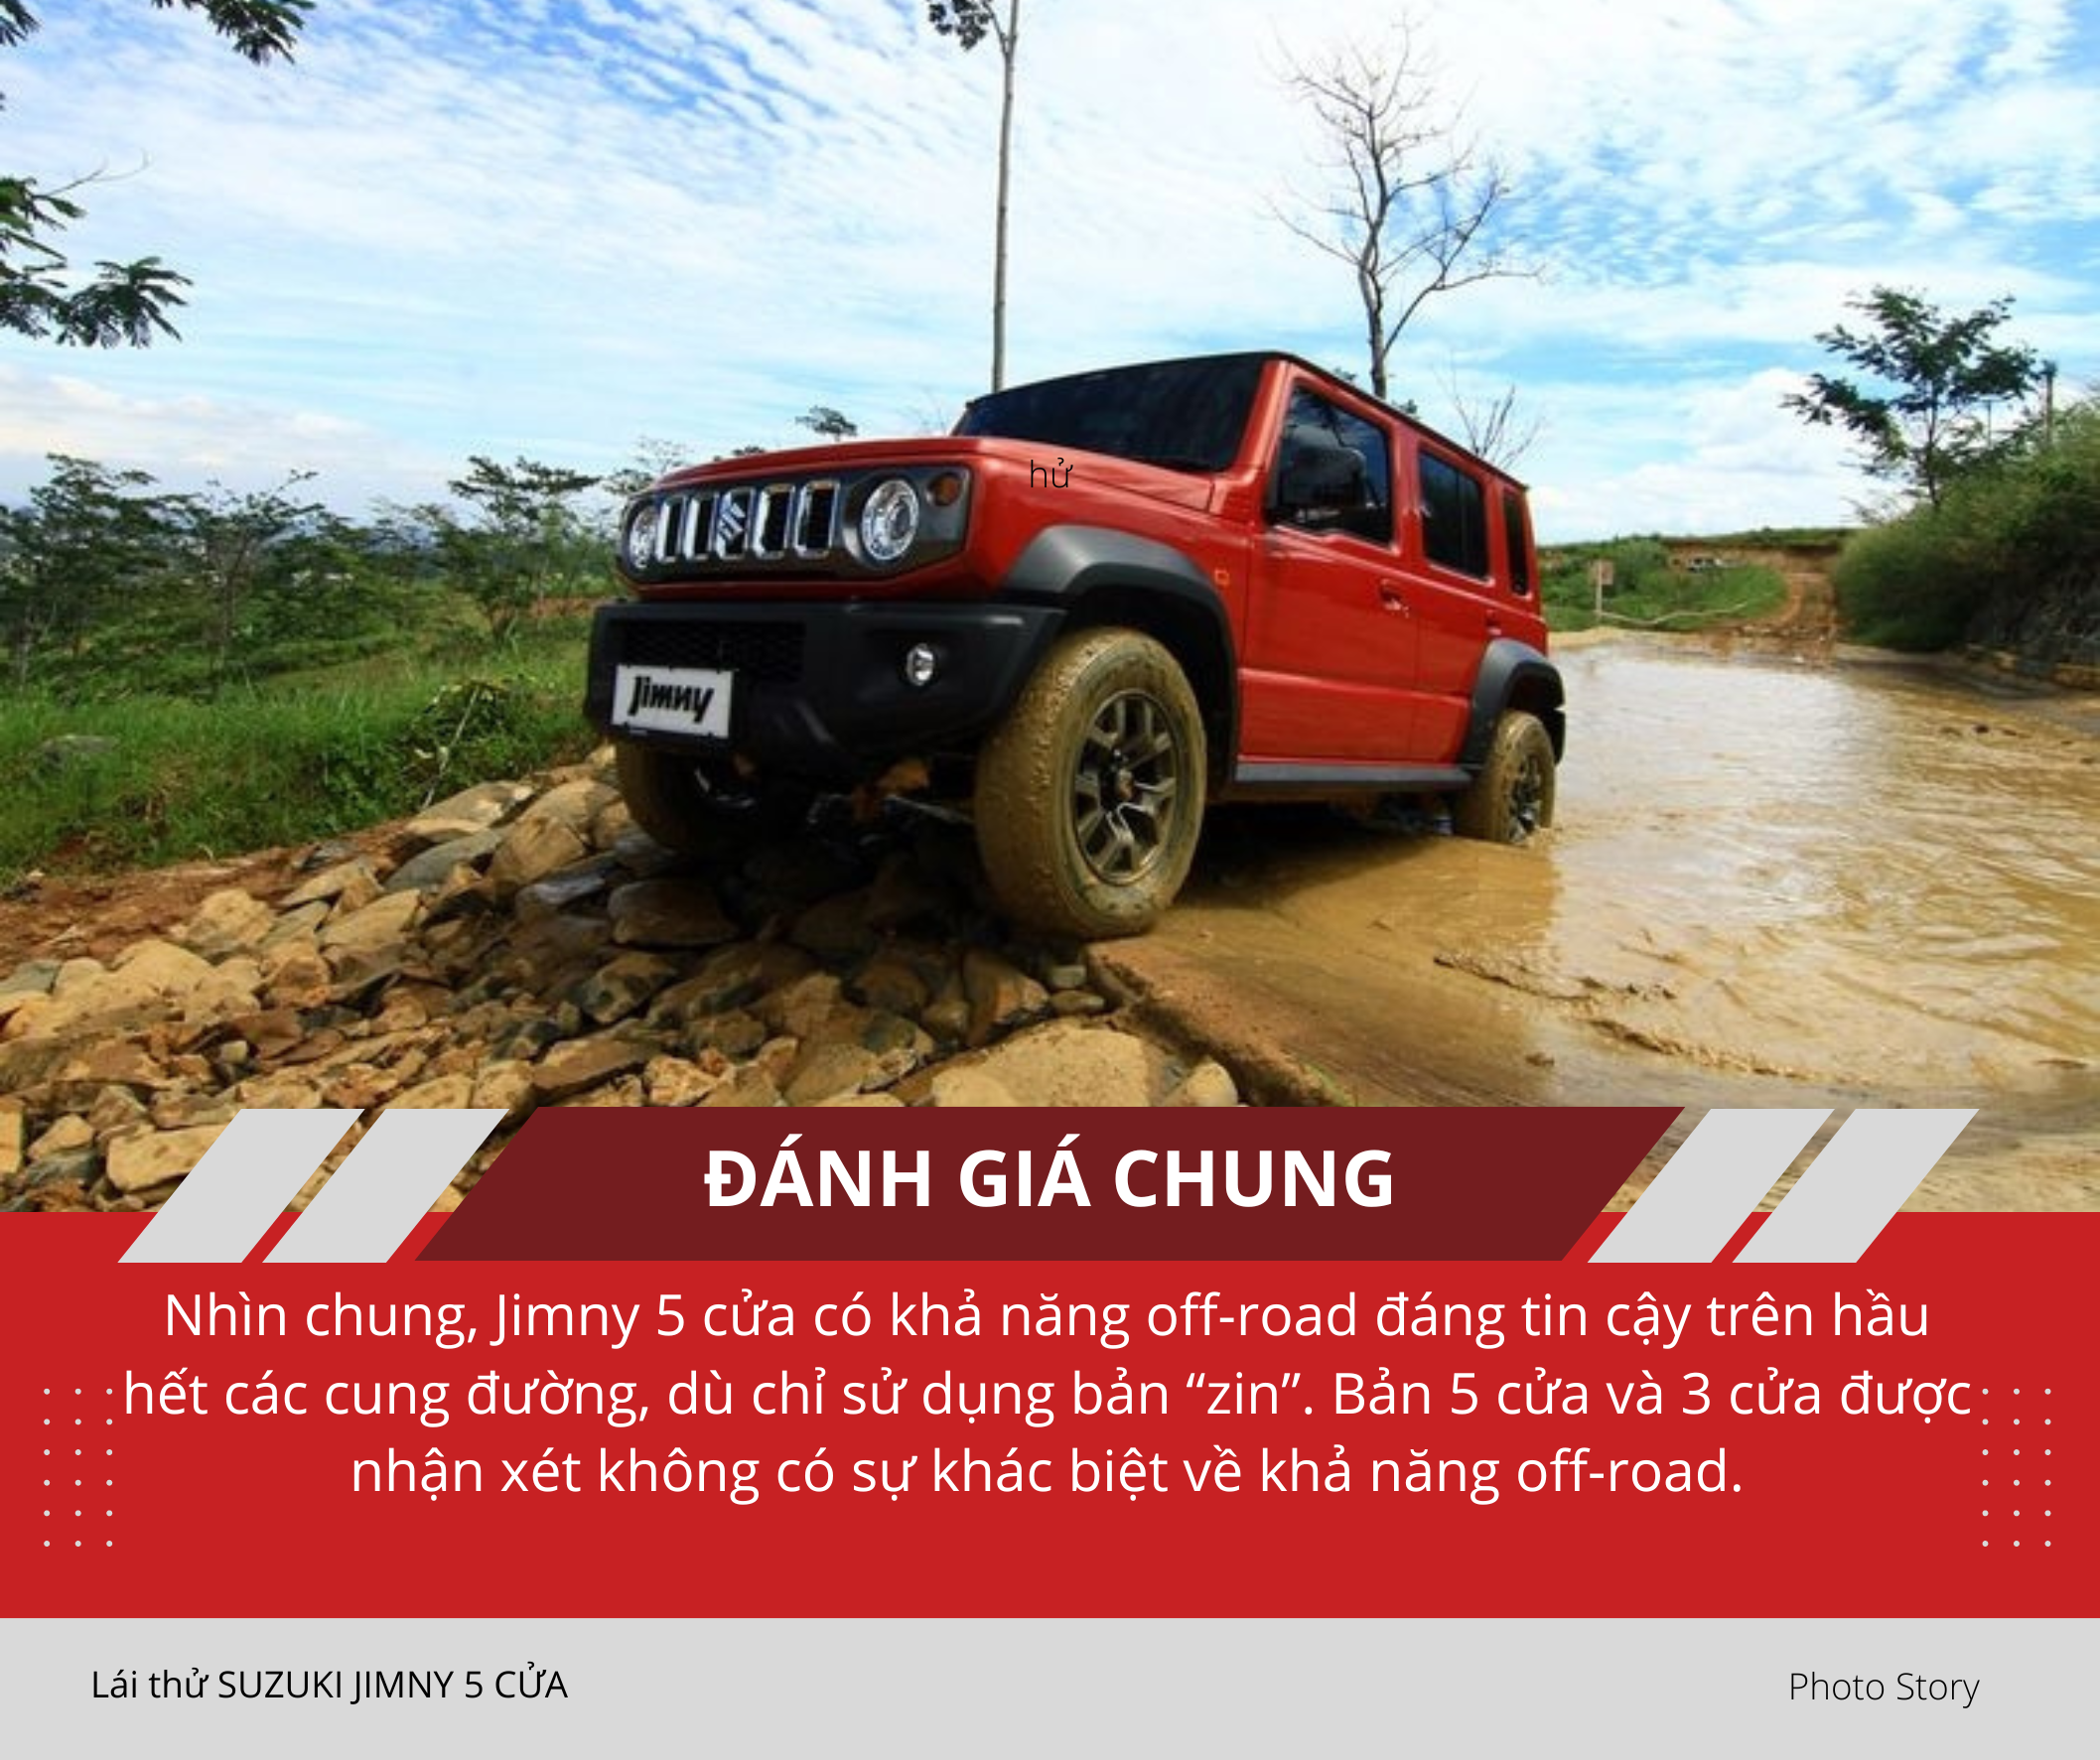 Mang Suzuki Jimny 5 cửa vào rừng 'hành hạ': Nhiều điểm hơn hẳn bản 3 cửa sắp ra mắt Việt Nam, thoải mái cho cả nhà cùng off-road - Ảnh 3.